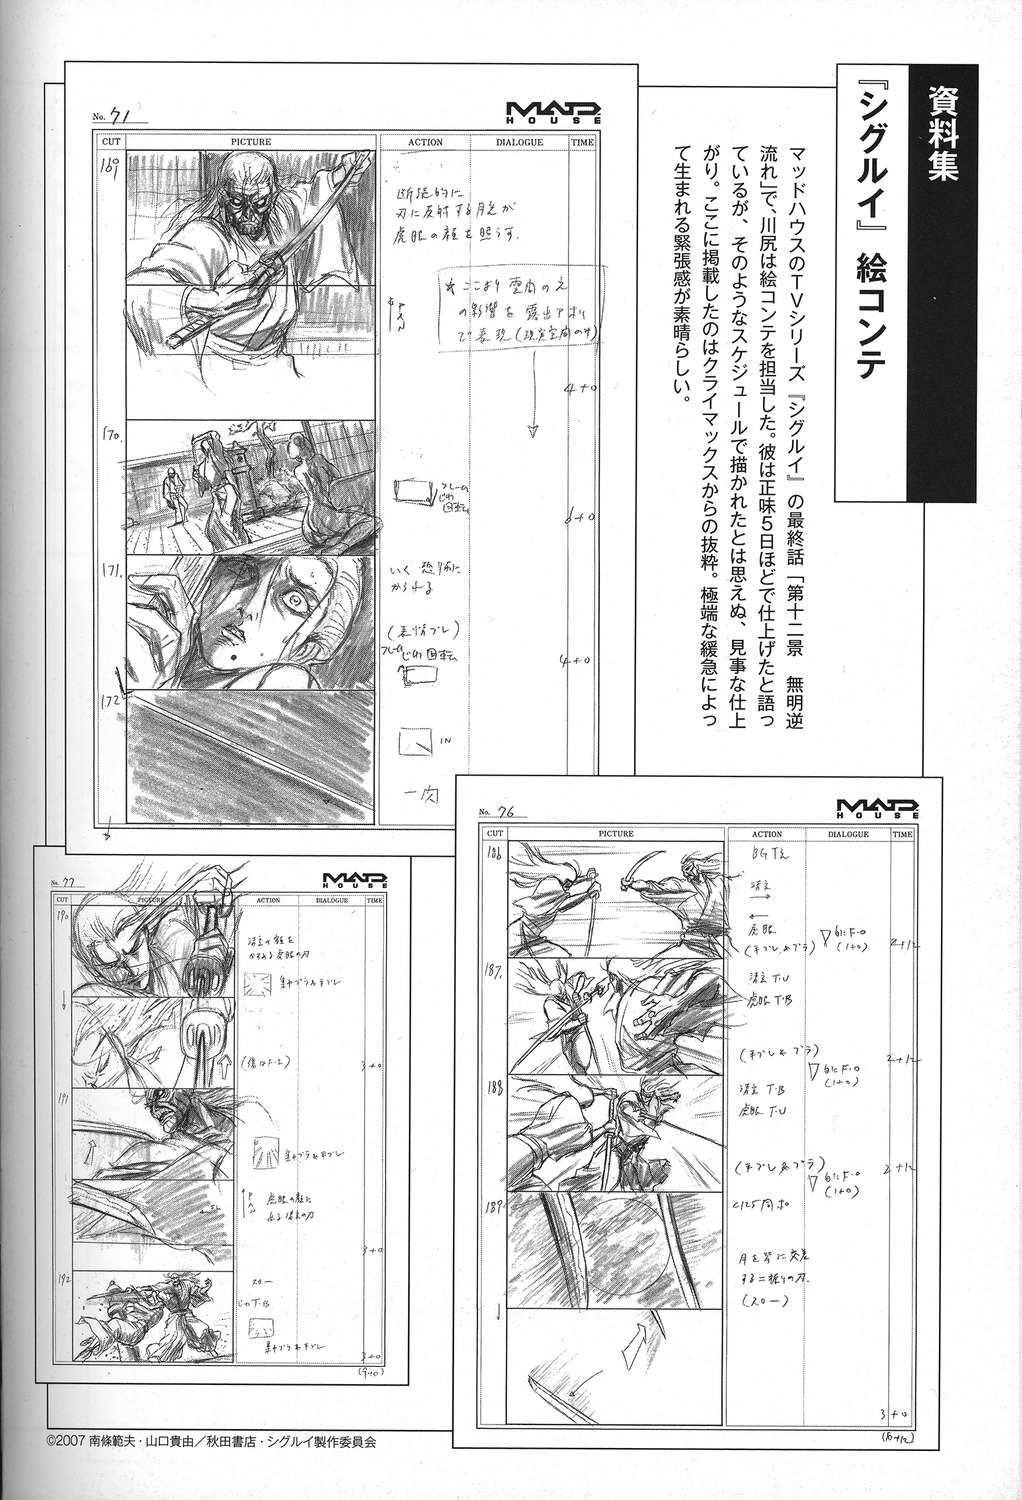 production_materials shigurui storyboard yoshiaki_kawajiri